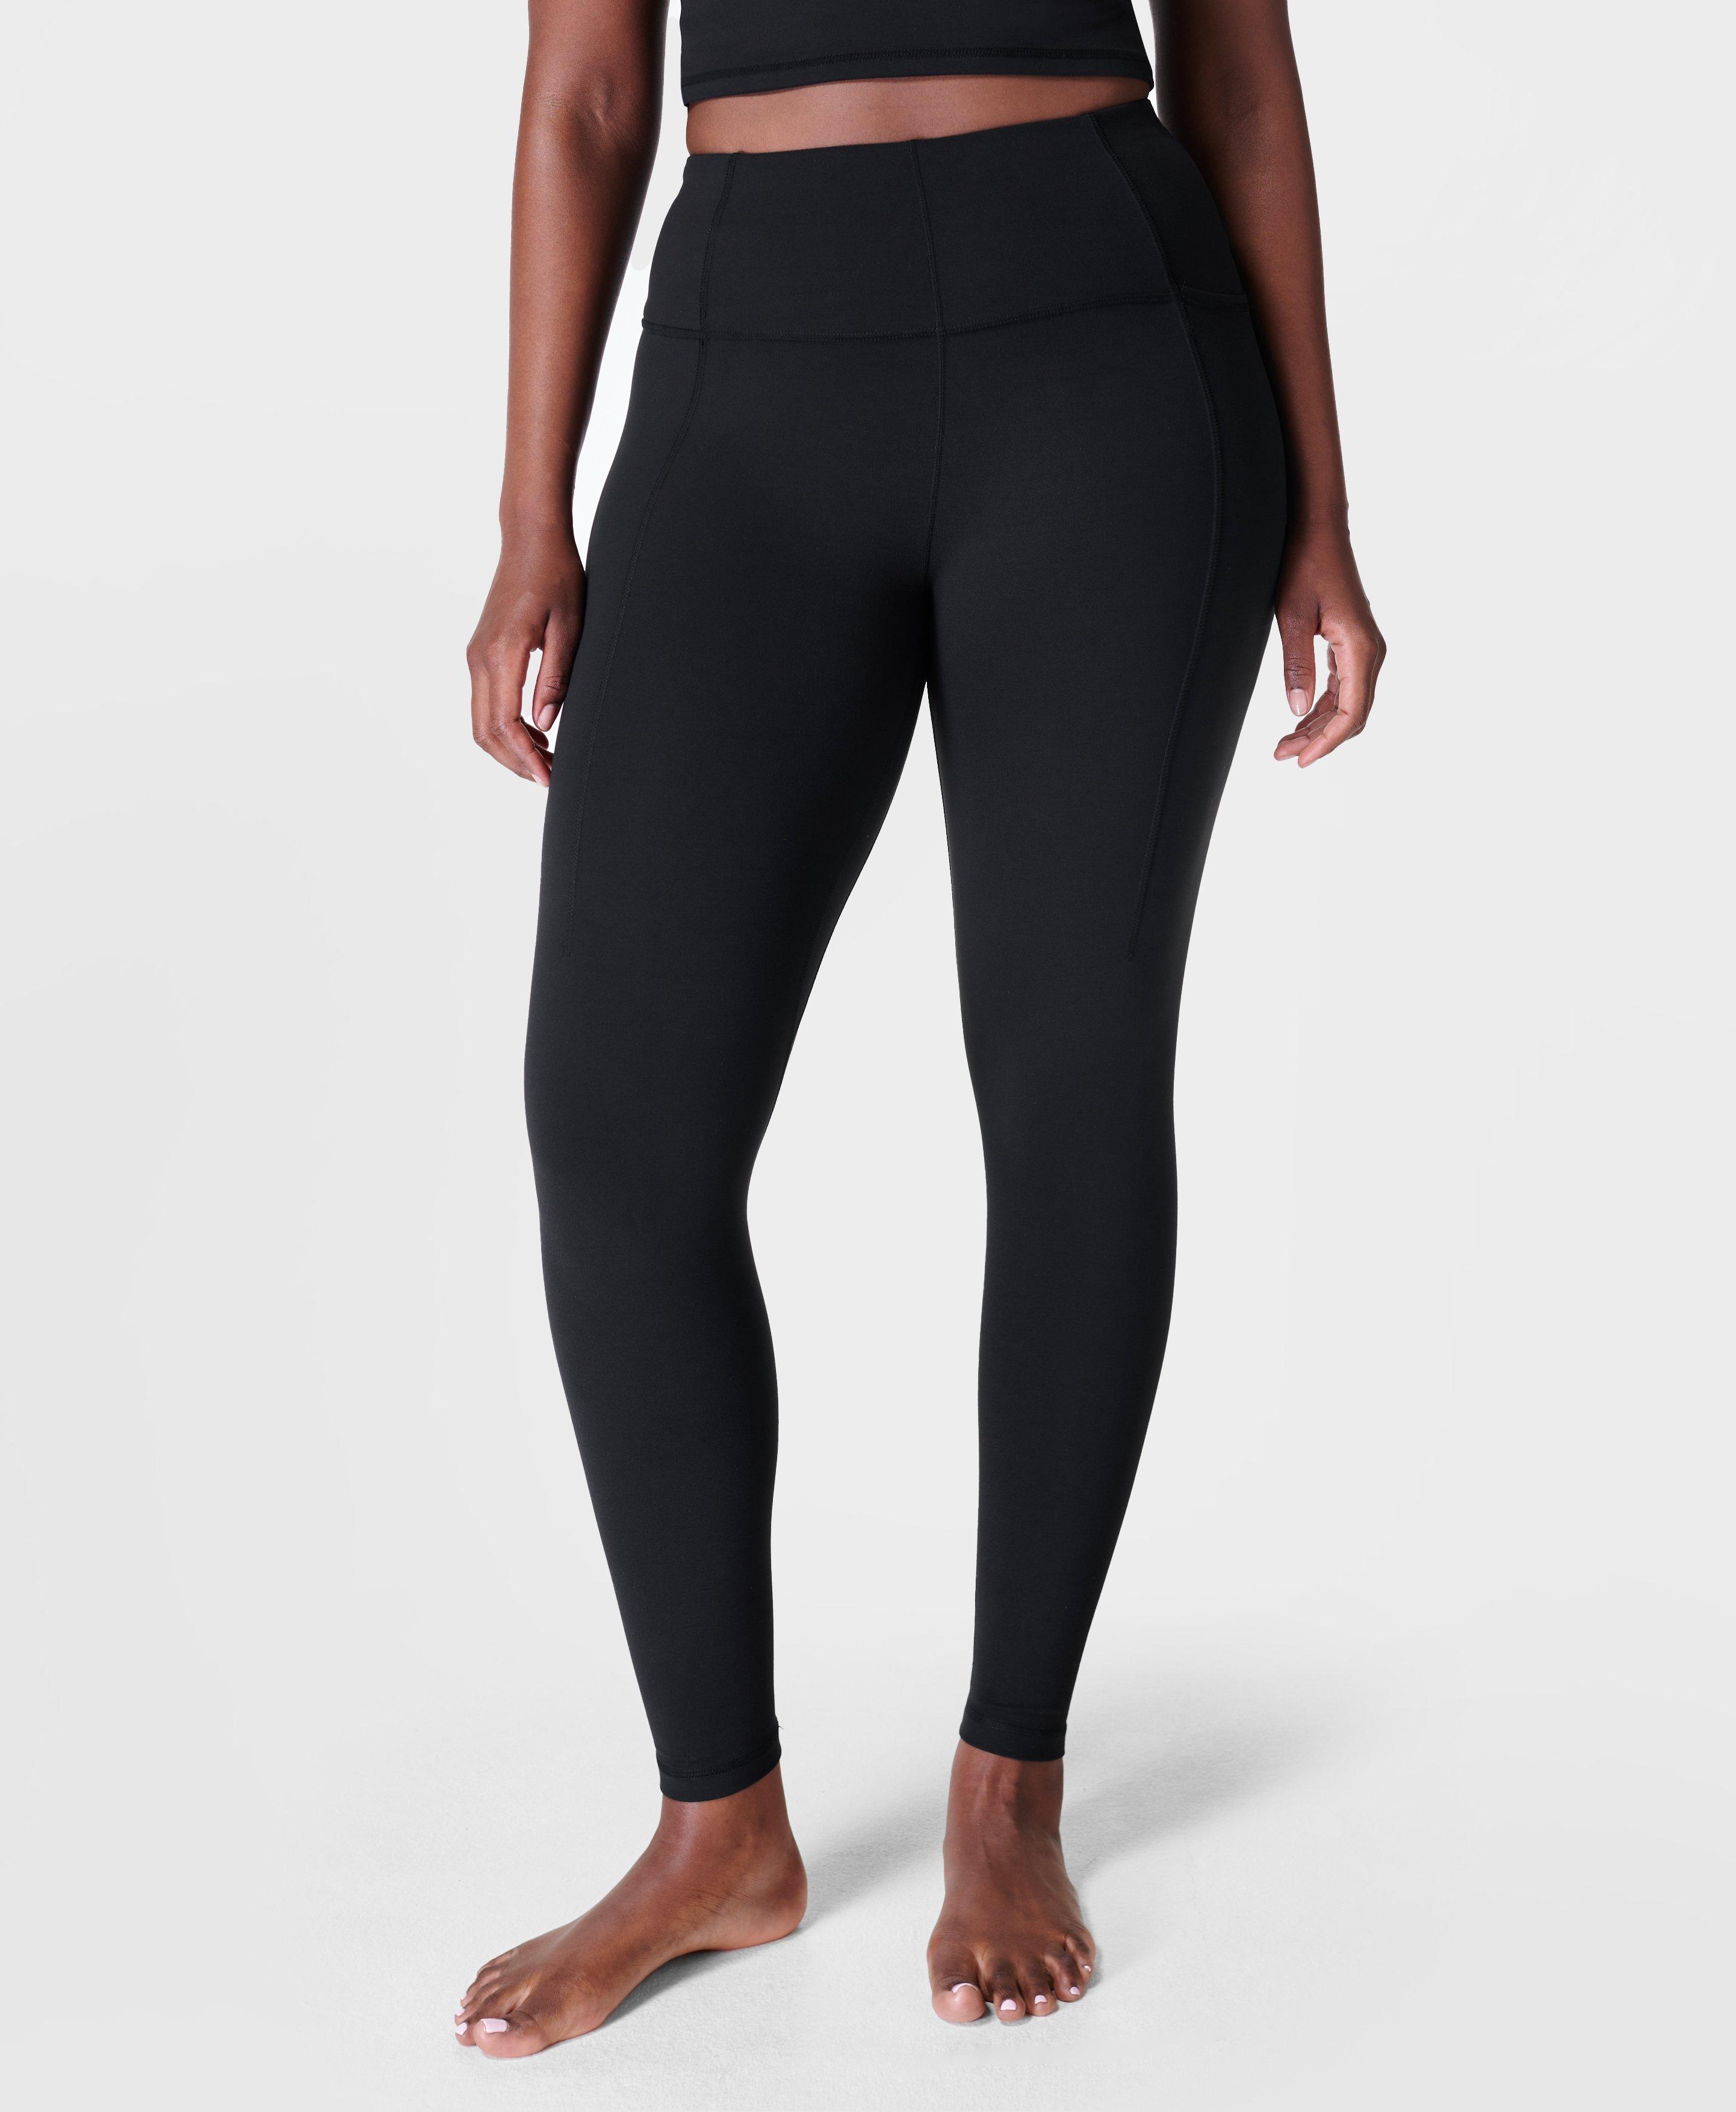 Super Yoga Leggings- black | Women's Leggings | www.sweatybetty.com